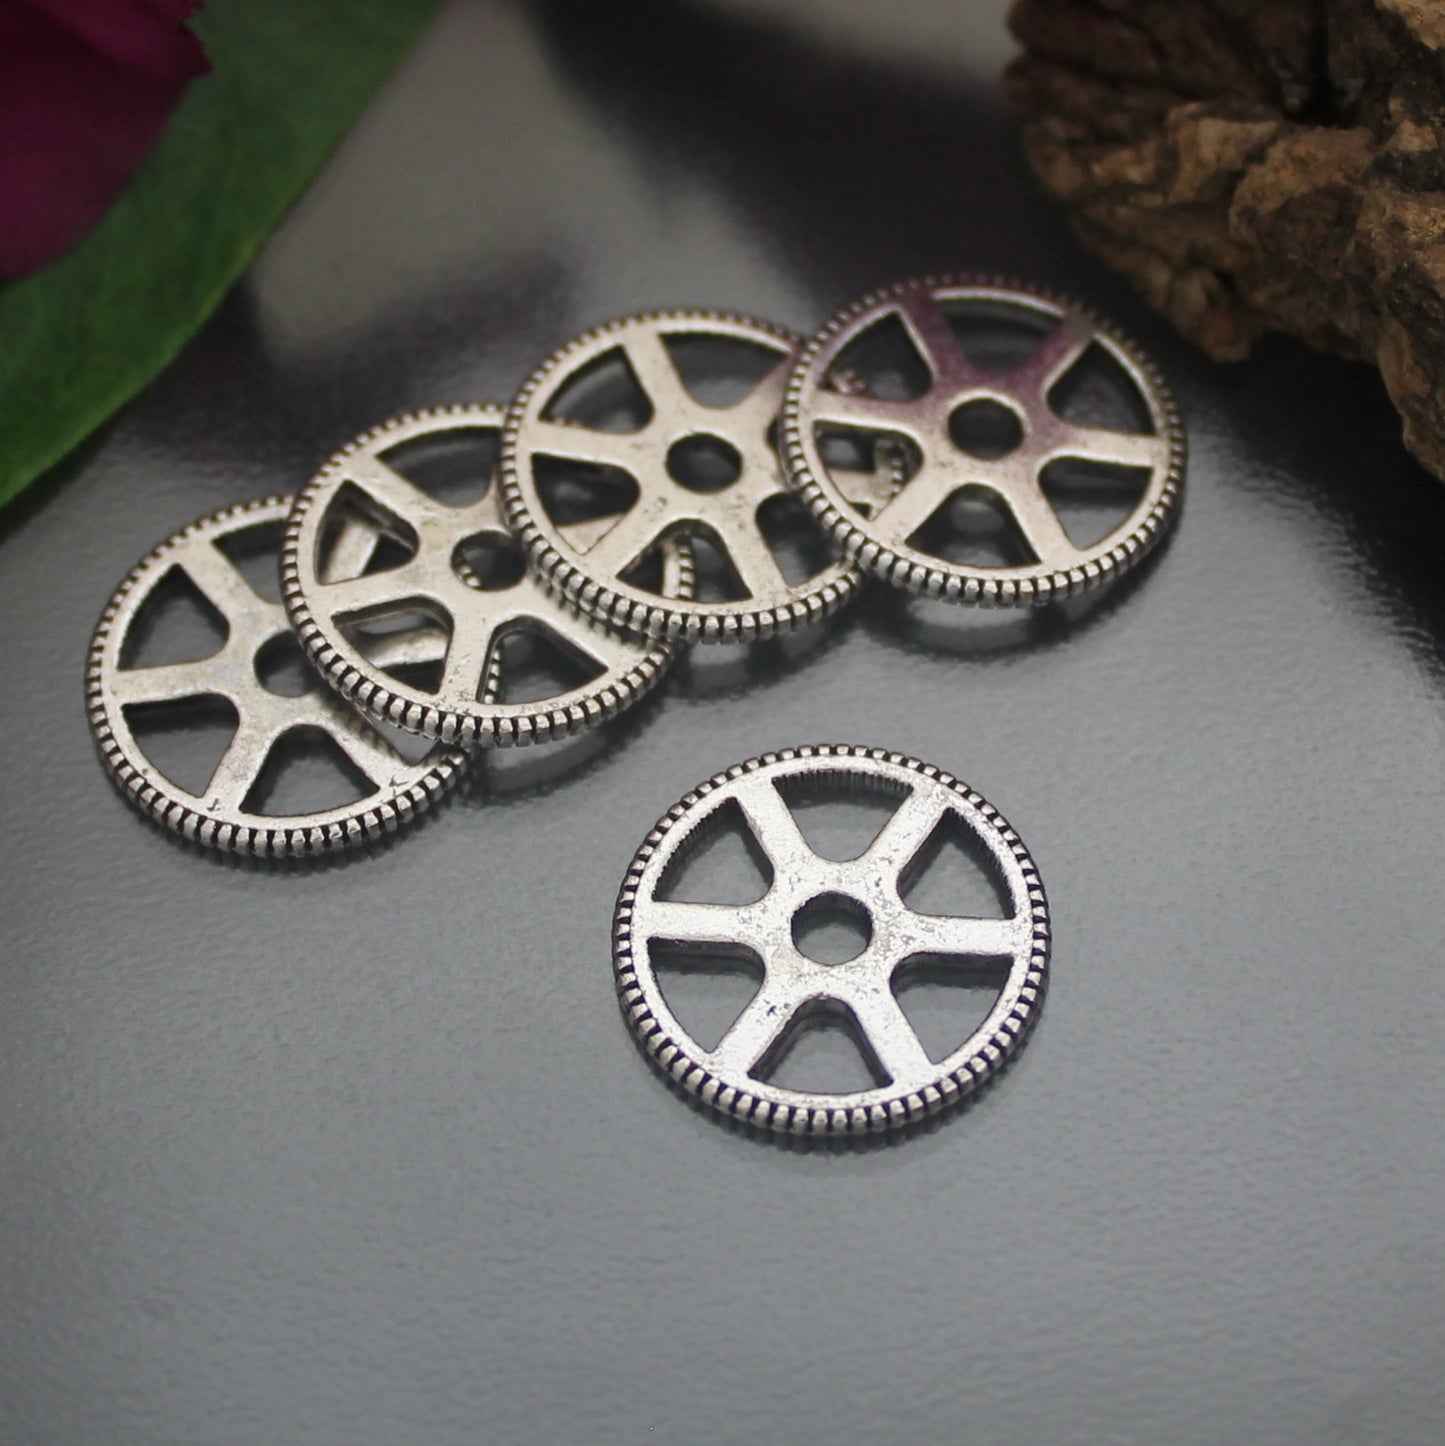 5 Zahnräder, Gearwheels, im Steampunk-Design, ø 20mm, ideal für die Schmuckfertigung